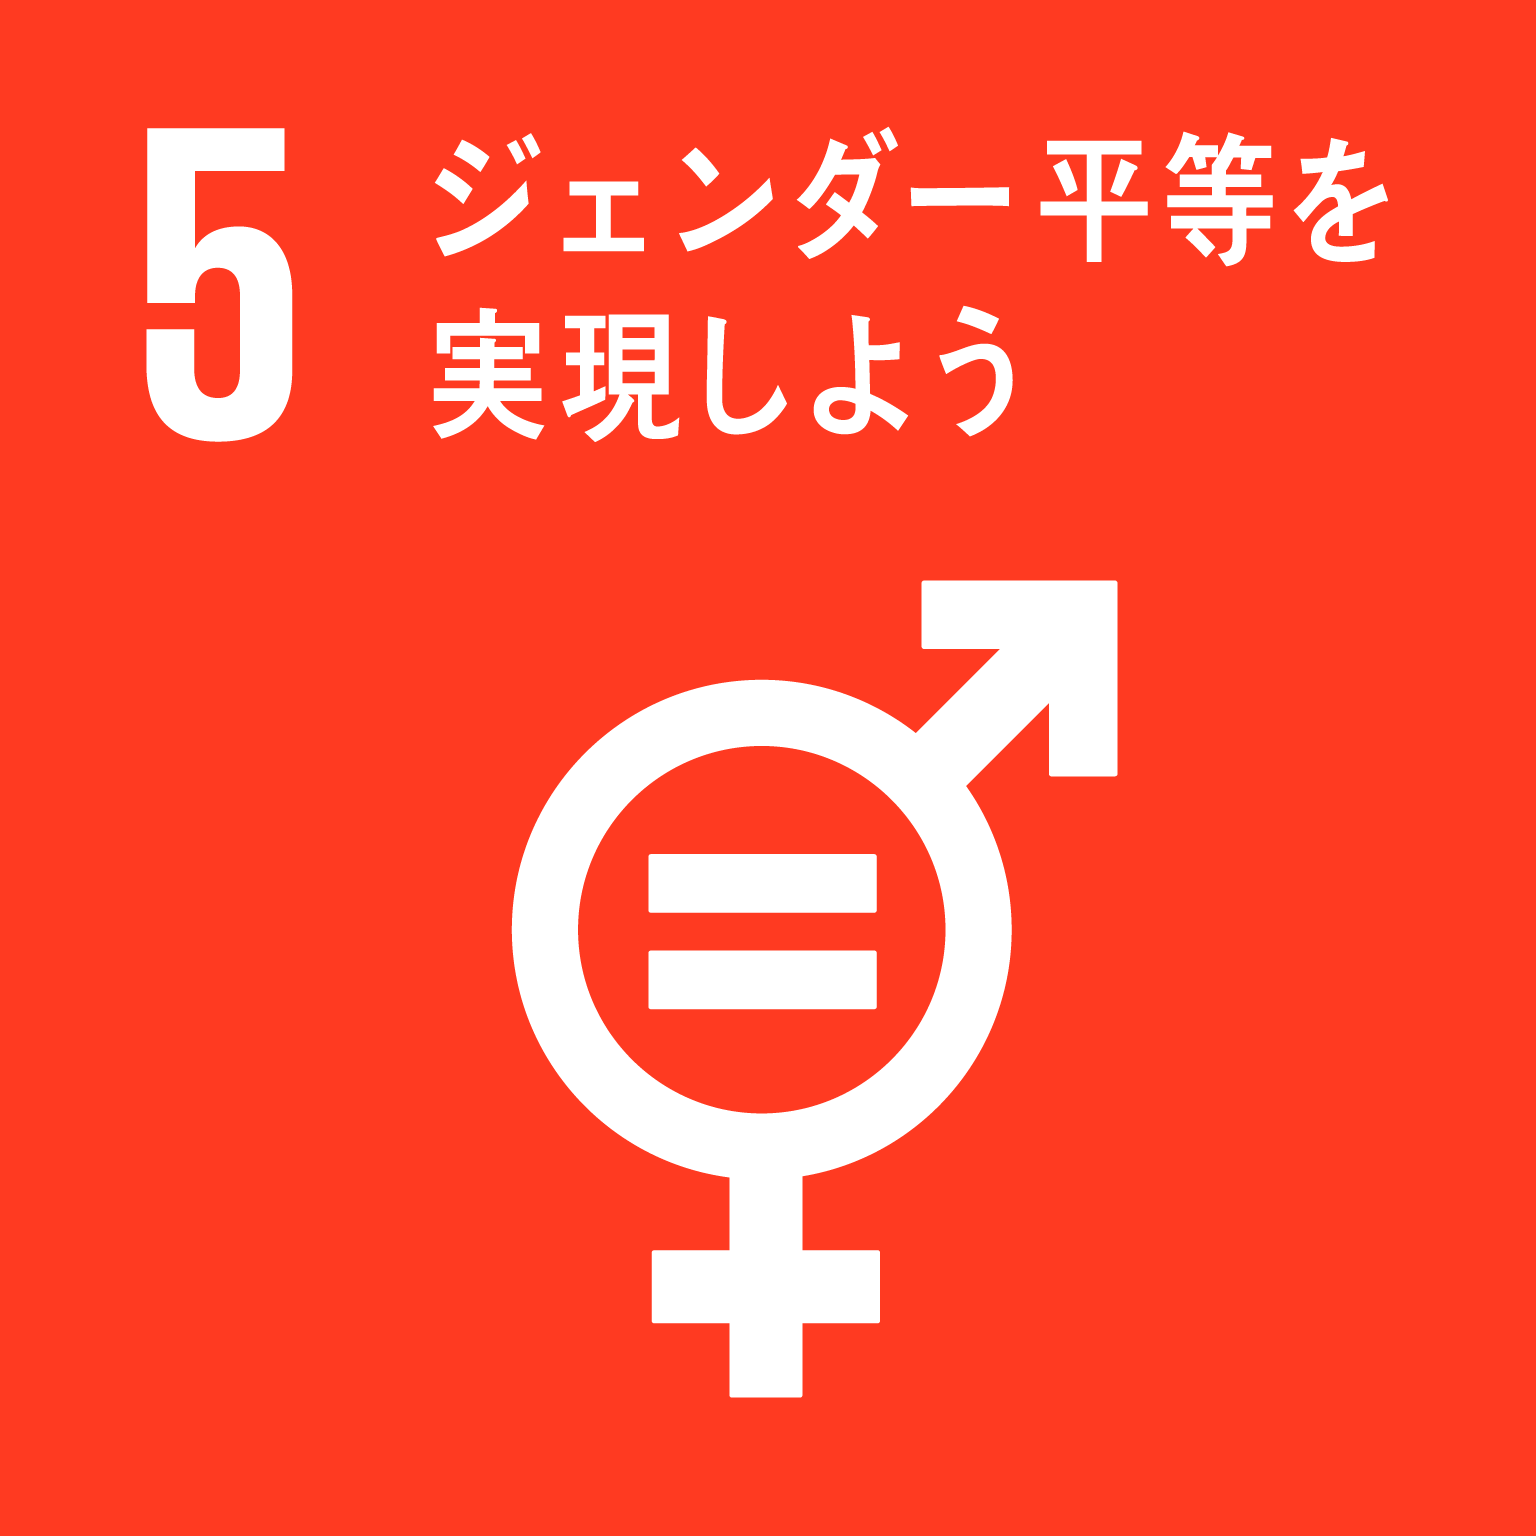 【SDGsロゴ】ジェンダー平等を実現しよう